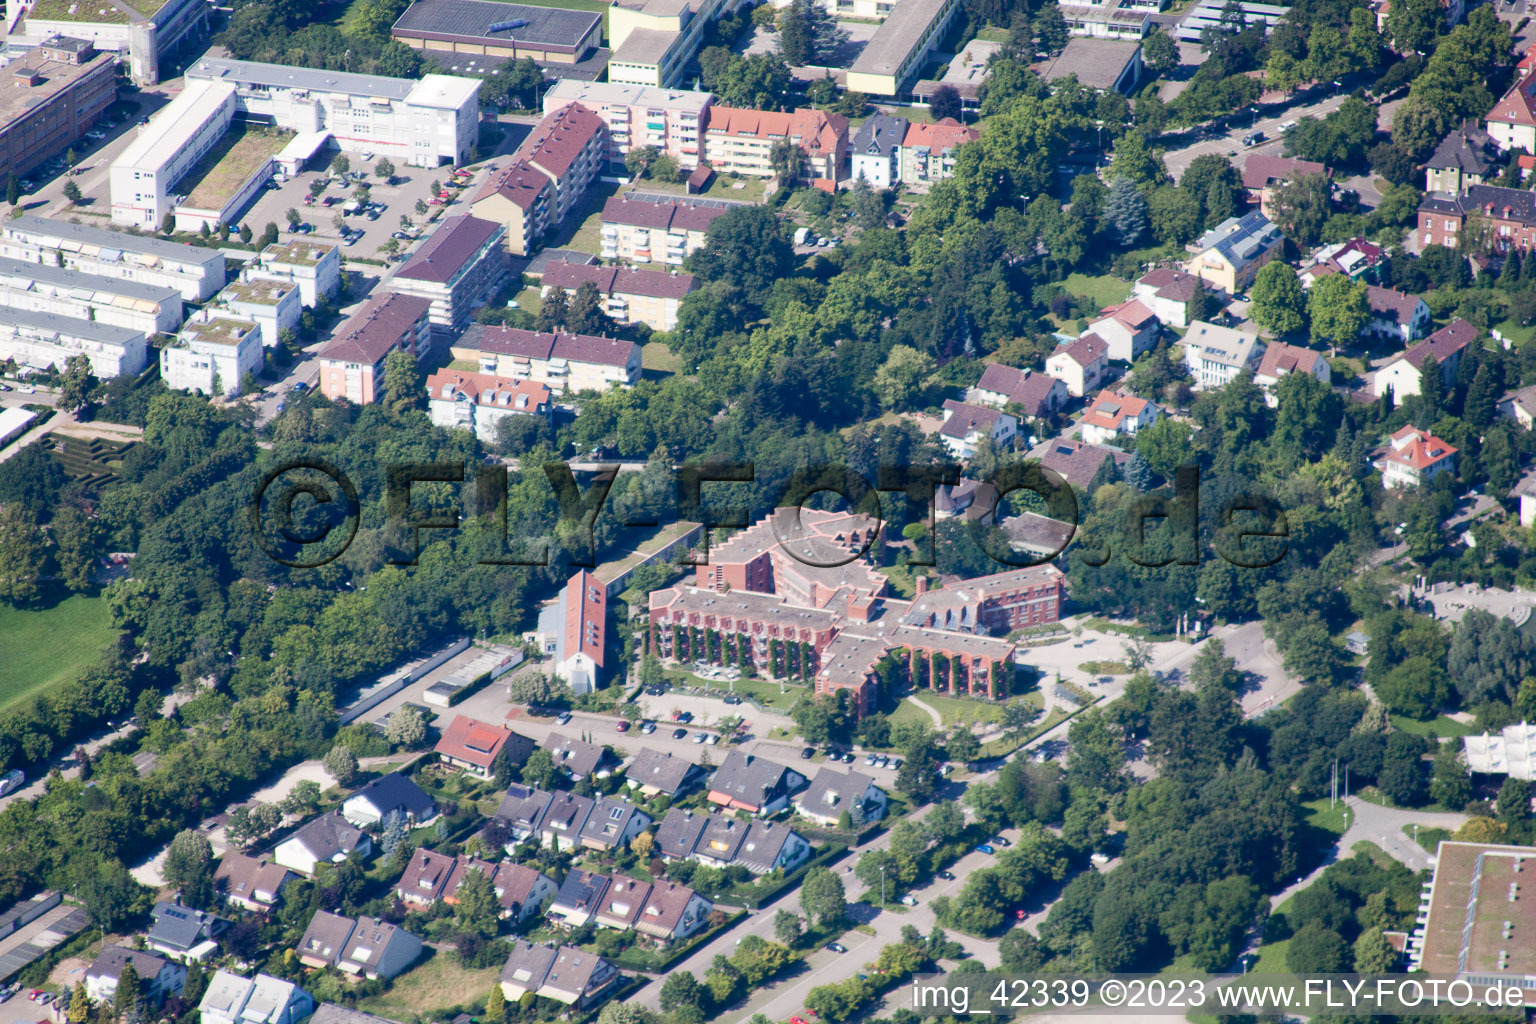 Vue aérienne de Centre pour seniors Caritas au Horbachpark à Ettlingen dans le département Bade-Wurtemberg, Allemagne